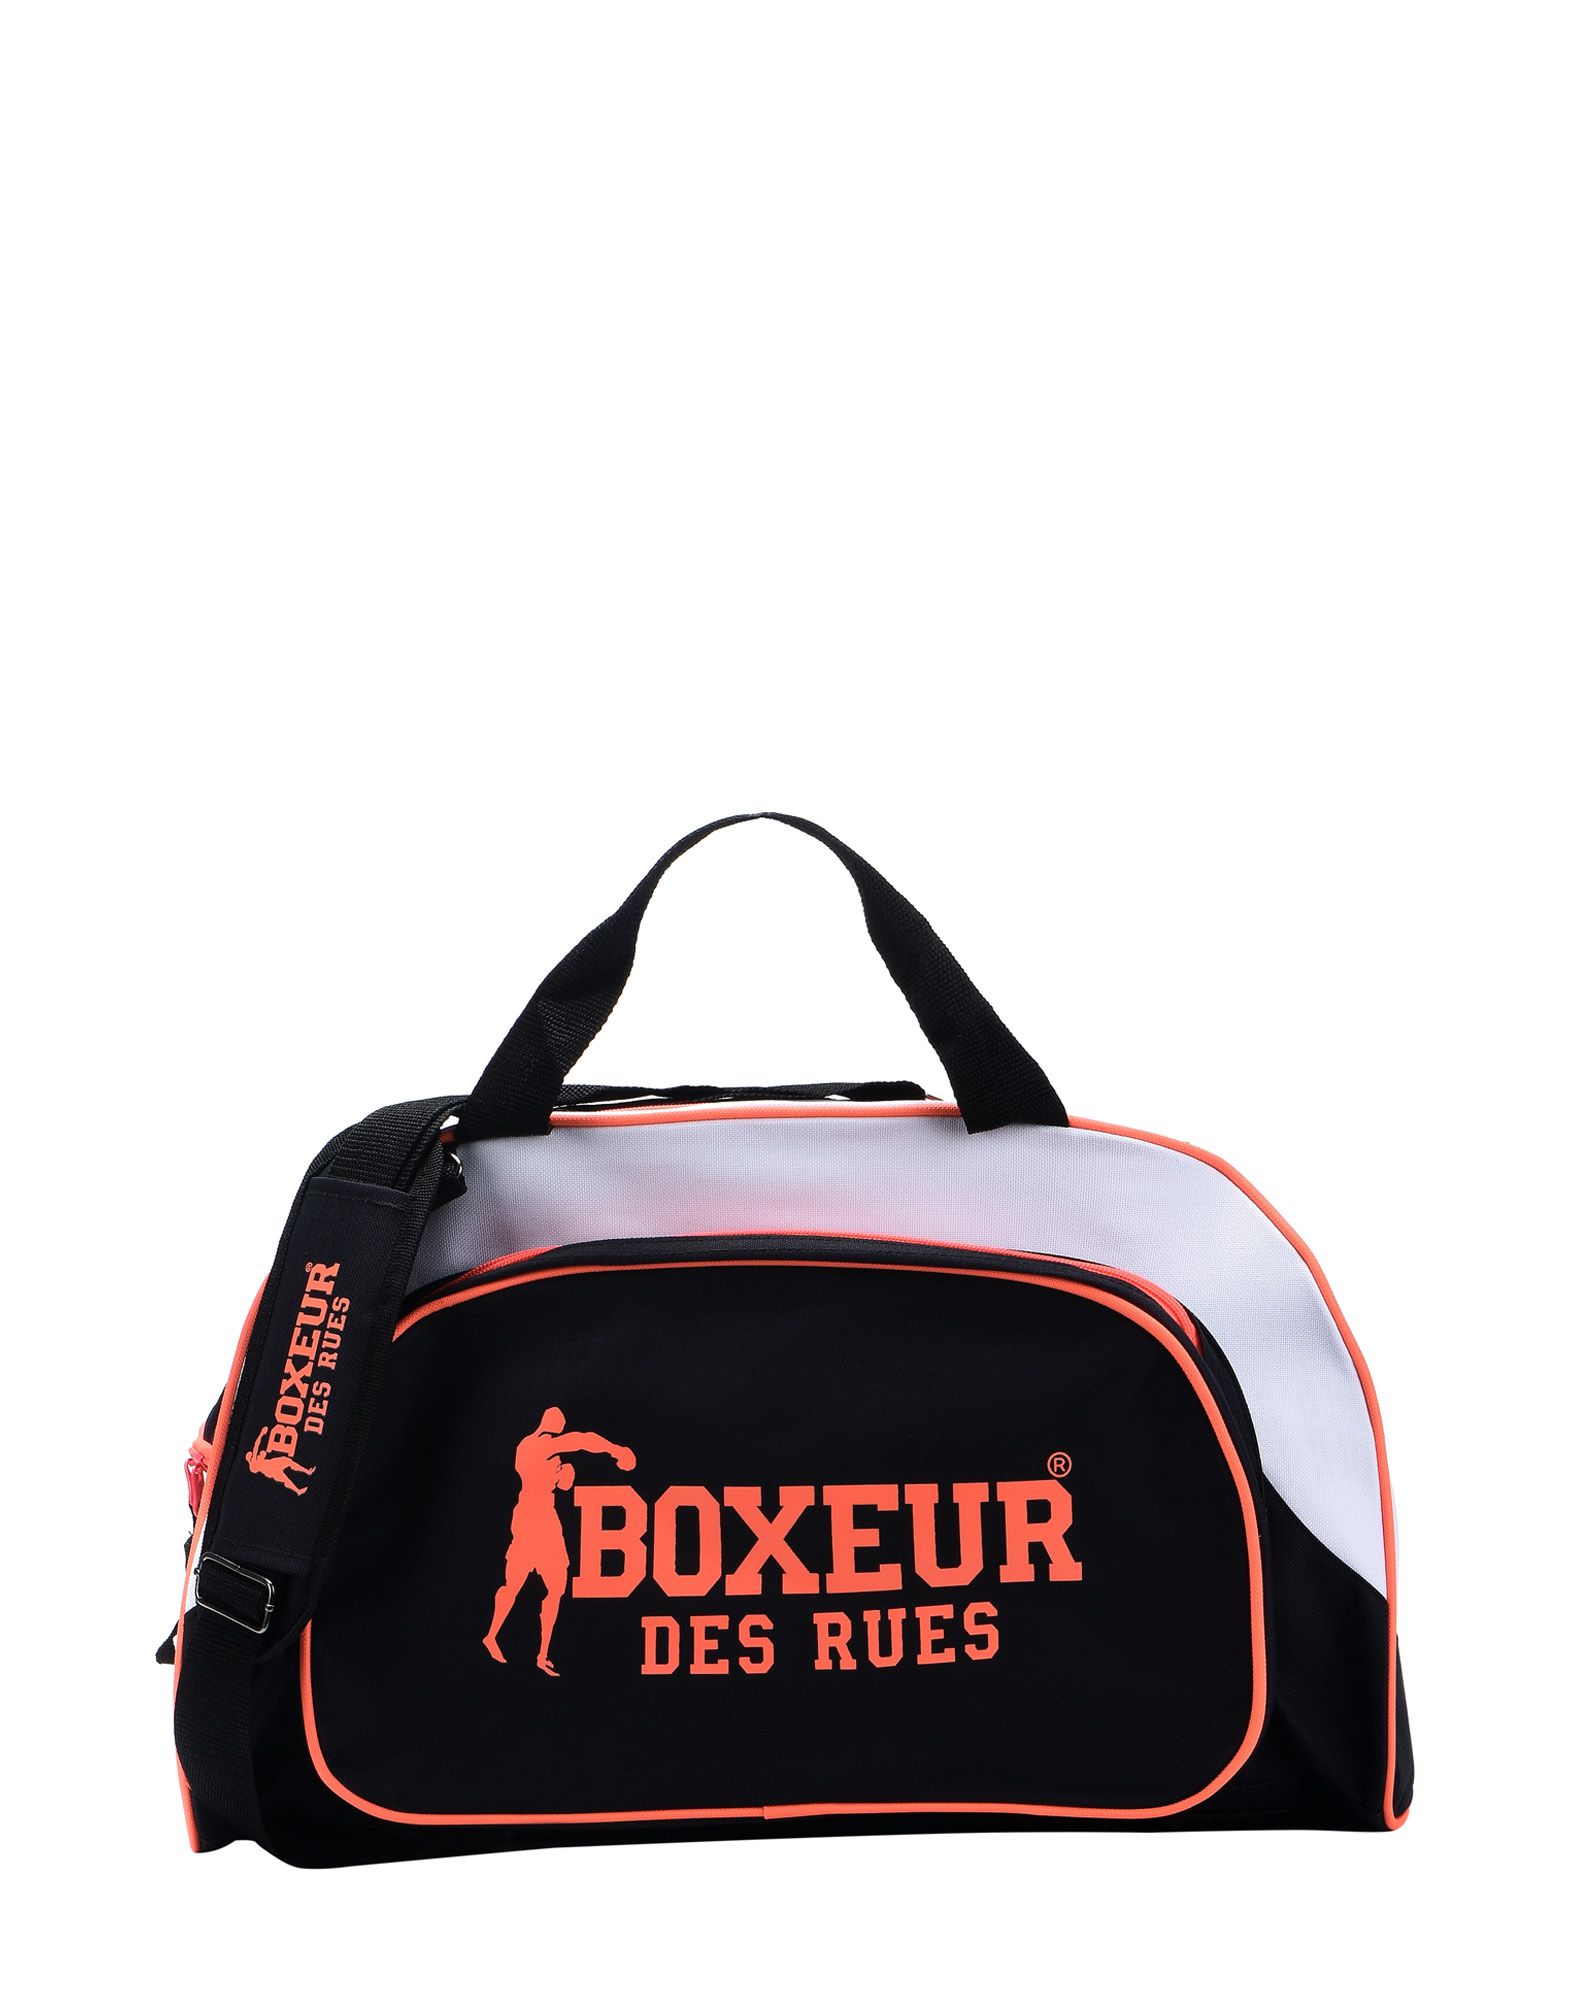 《送料無料》BOXEUR DES RUES レディース 旅行バッグ オレンジ ポリエステル 100% FLUO 32LT SPORTS BAG